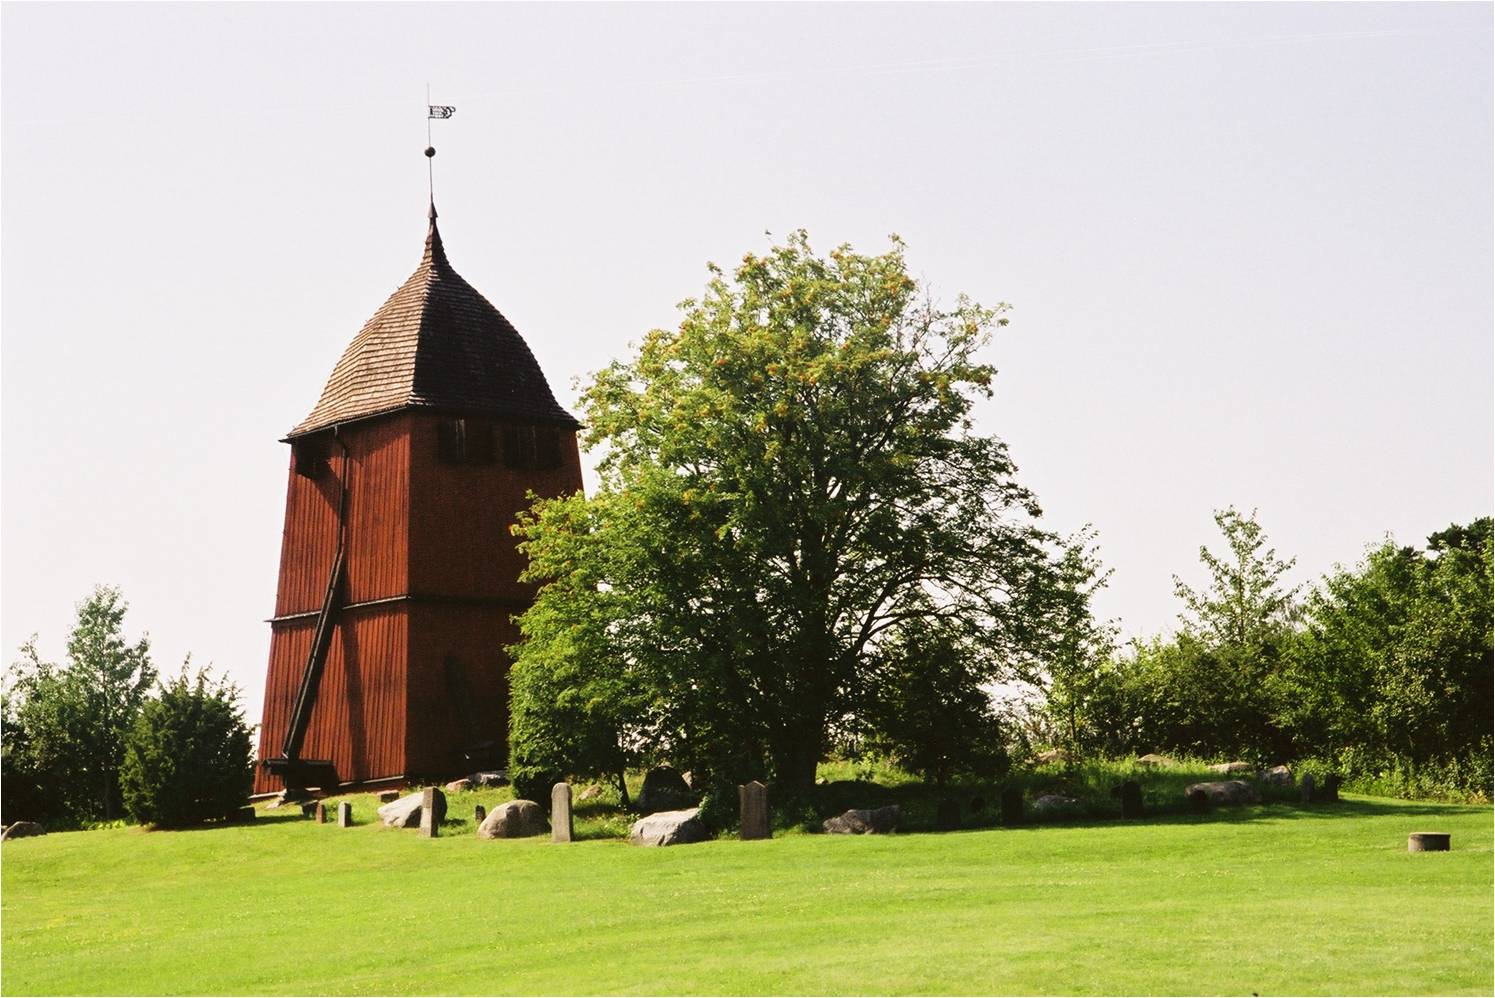 Klockstapeln ligger ett par hundra meter väster om kyrka.
Vid klockstapel har ställts upp kulturhistoriskt värdefulla gravvårdar från kyrkogården. 
